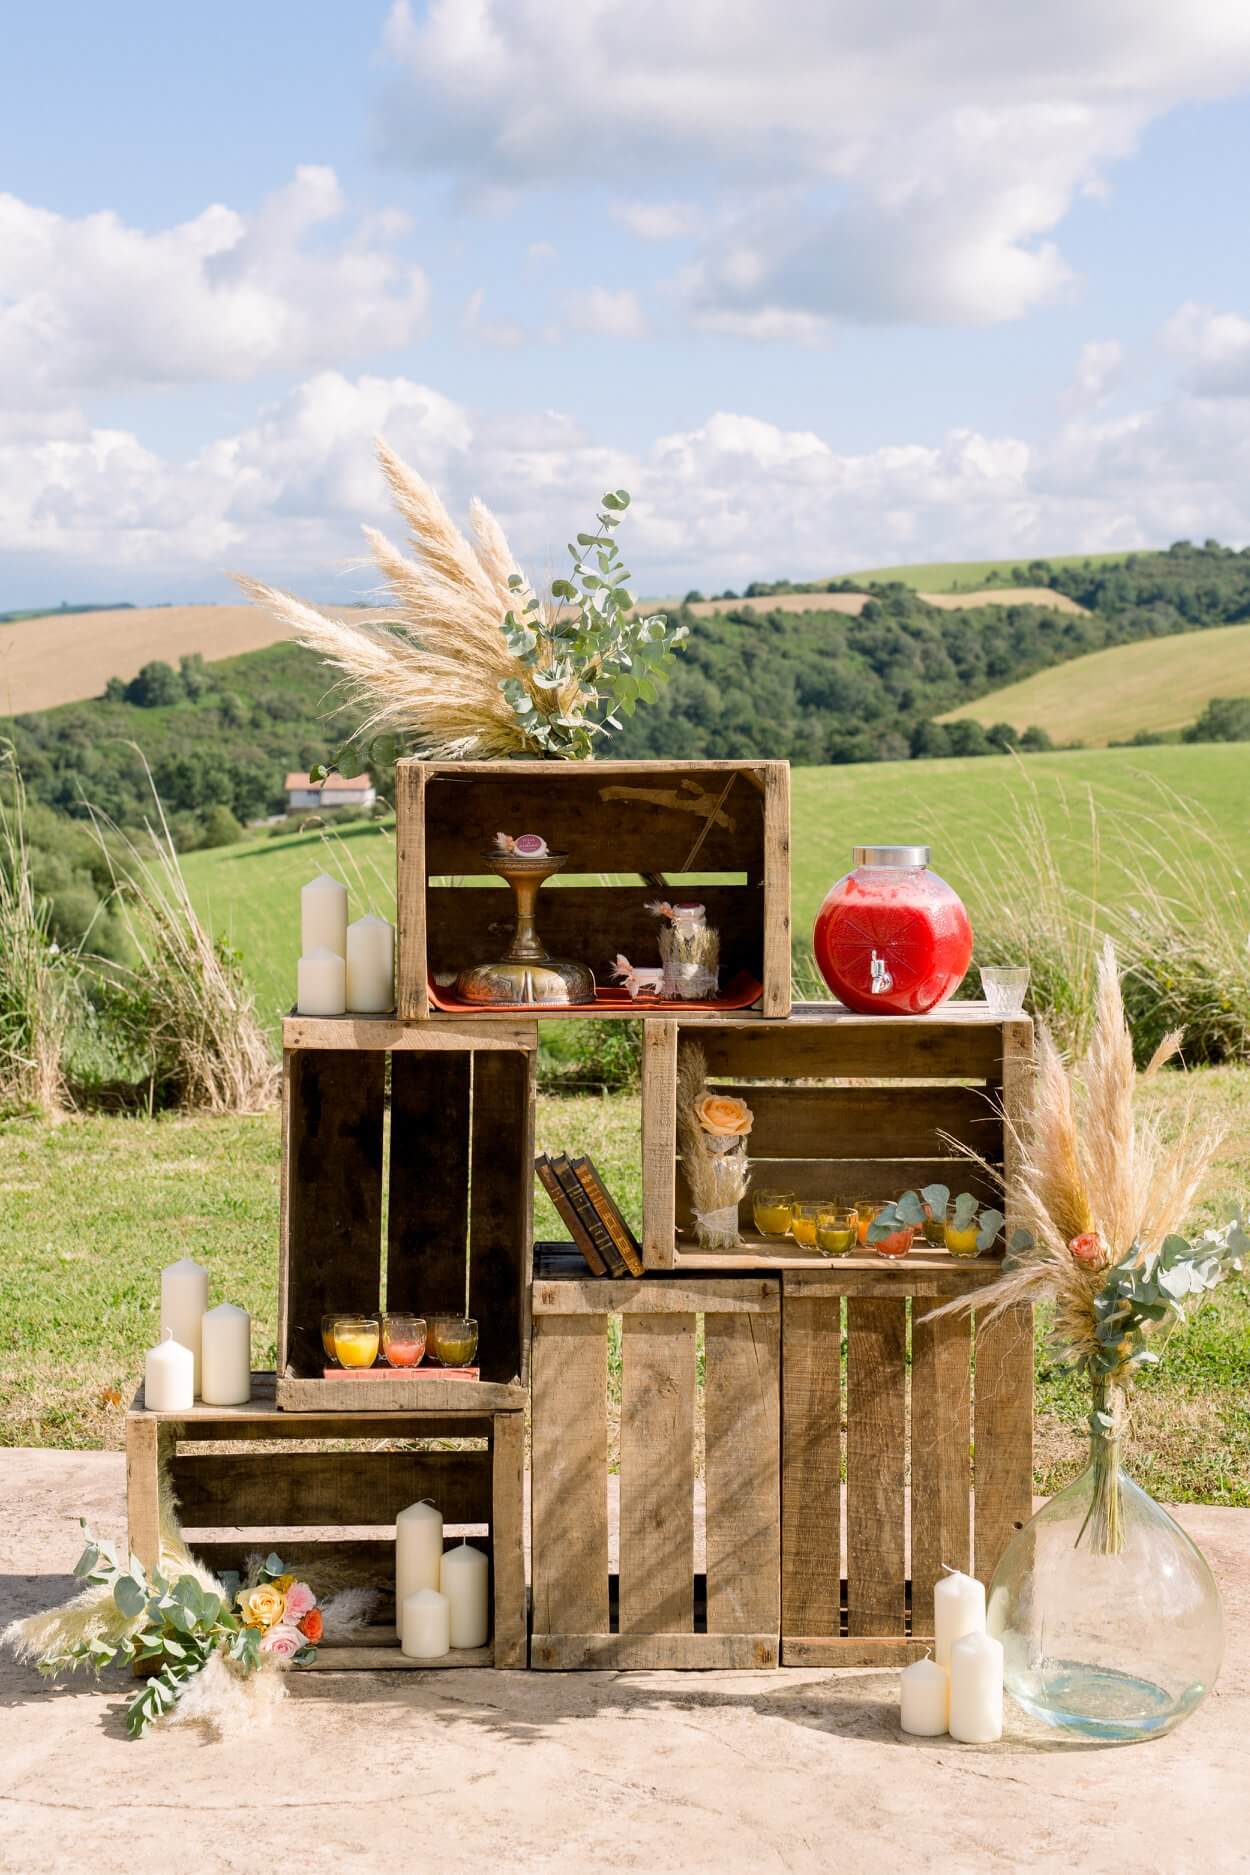 décoration vintage caisses de pommes.jpg